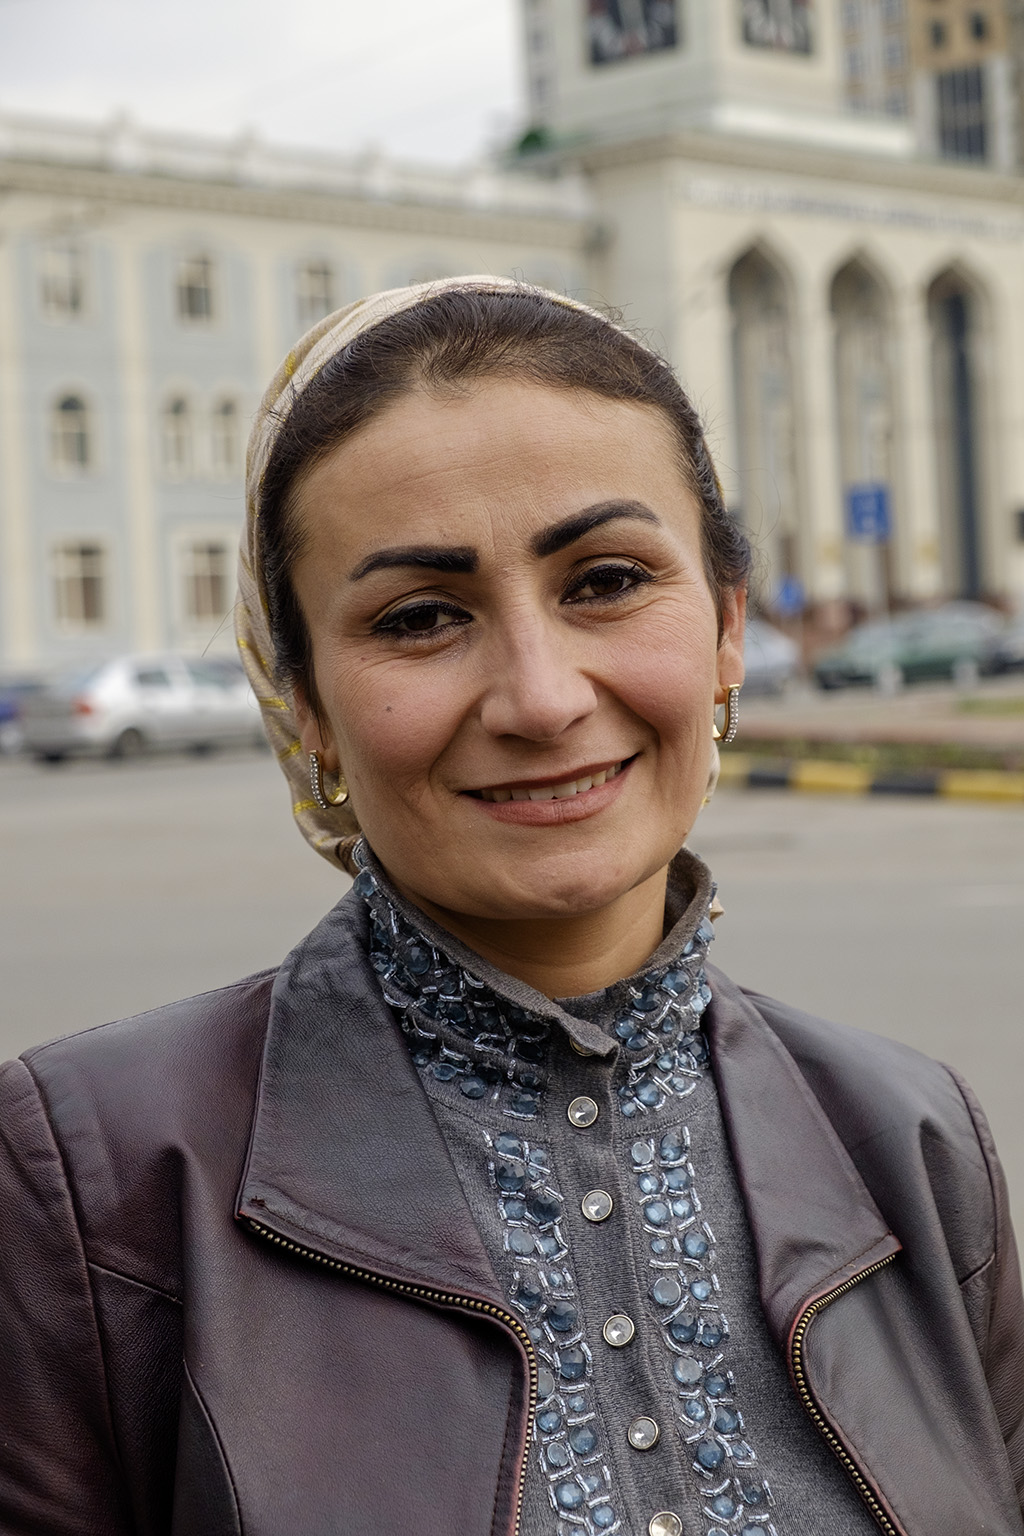 таджики фото женщины красивые